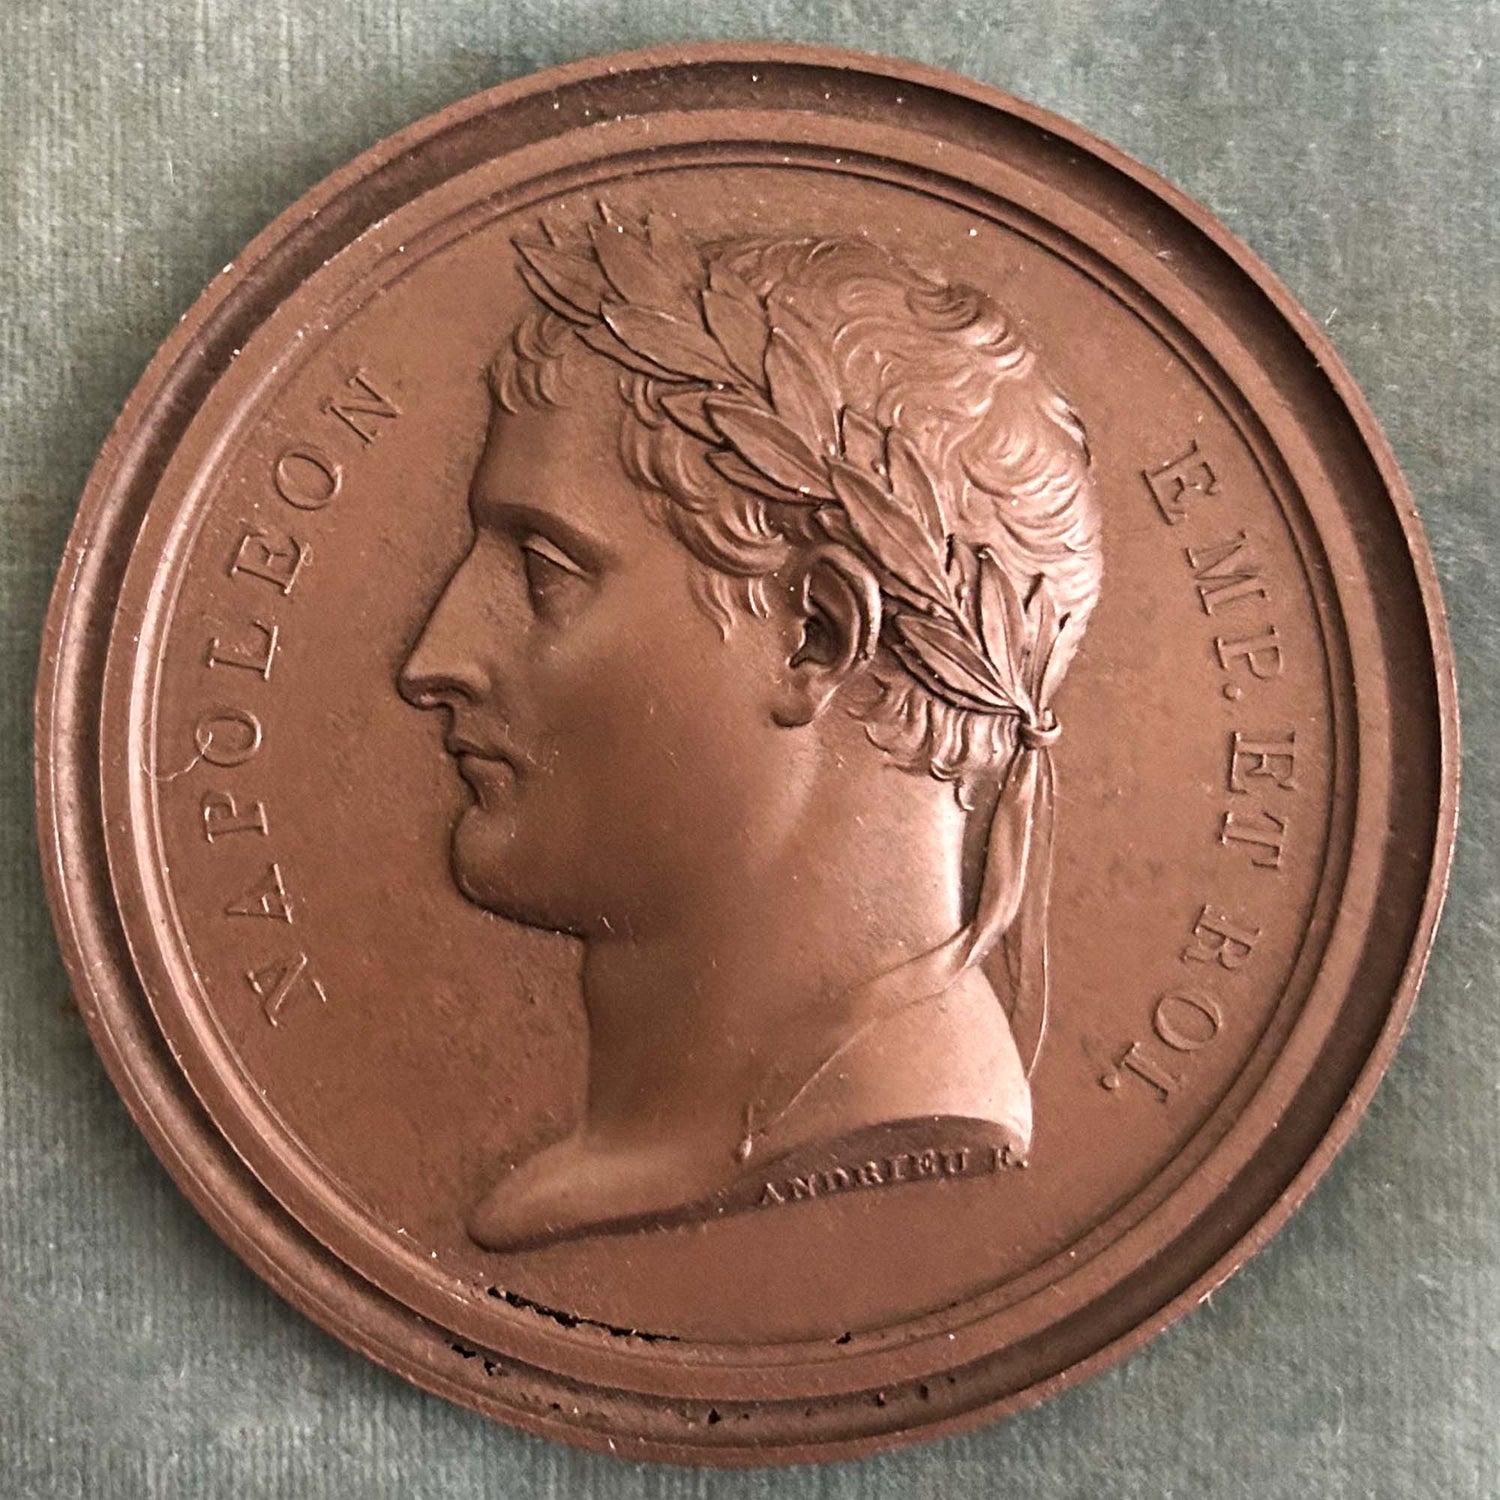 Napolean Medal Set Four